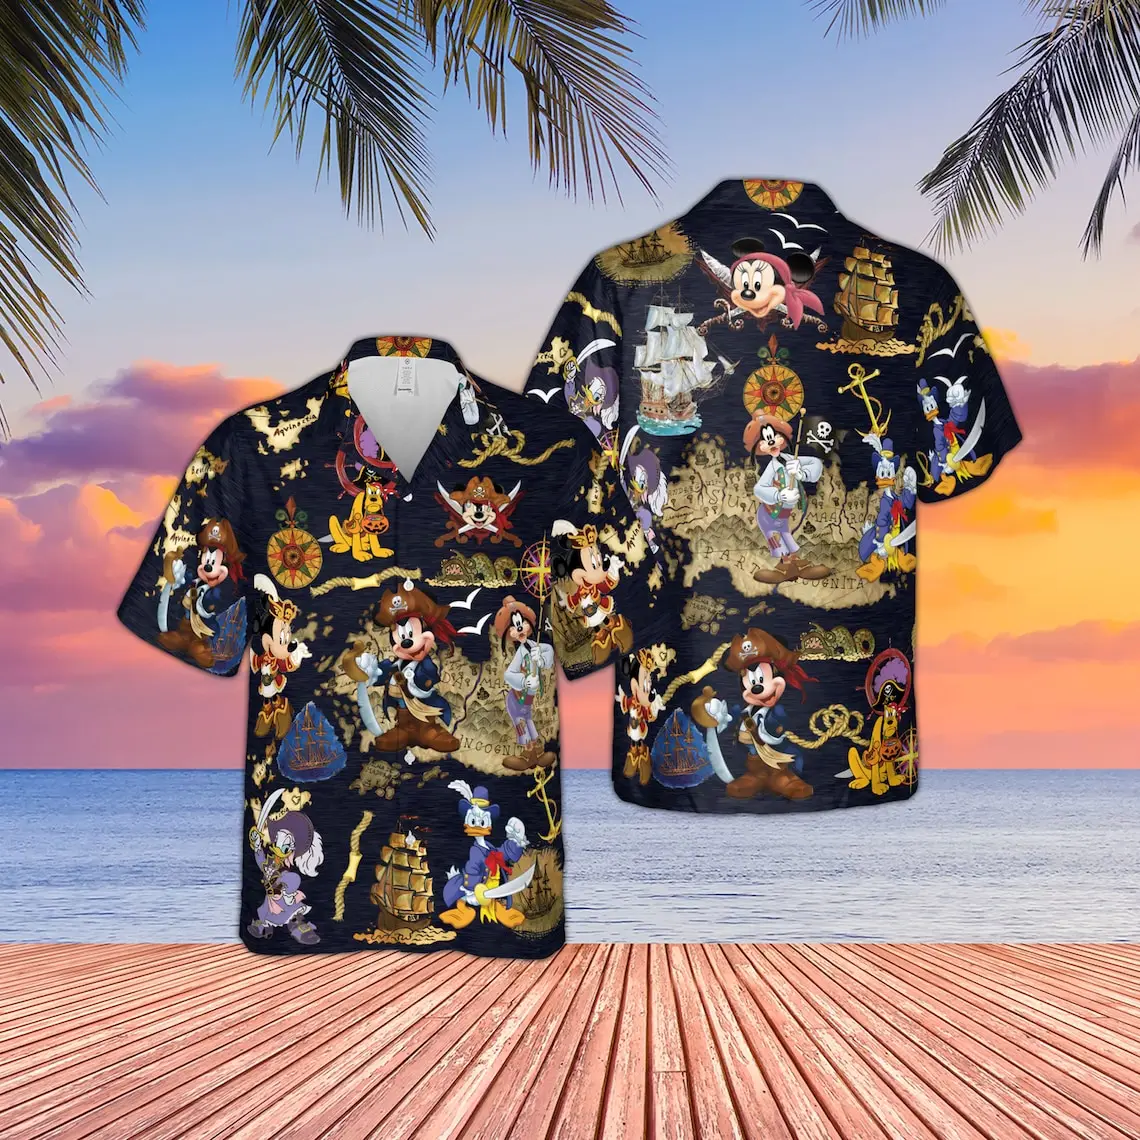 Гавайская рубашка Disney Pirates of Caribbean с Микки и друзьями, Гавайская рубашка Disney Pirate's Life, забавная праздничная рубашка